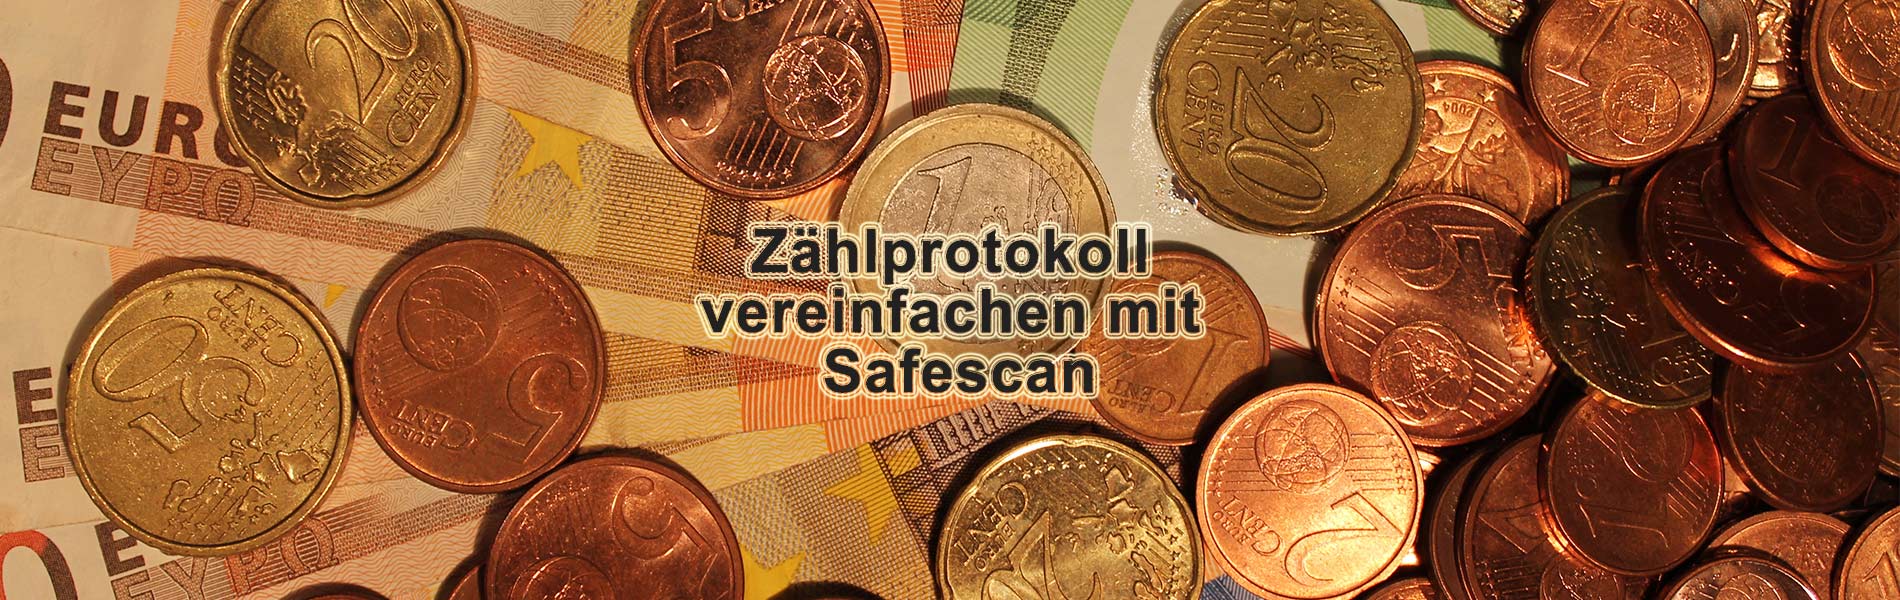 Zählprotokoll vereinfachen mit Safescan Geldzählmaschine inkl. Thermodrucker